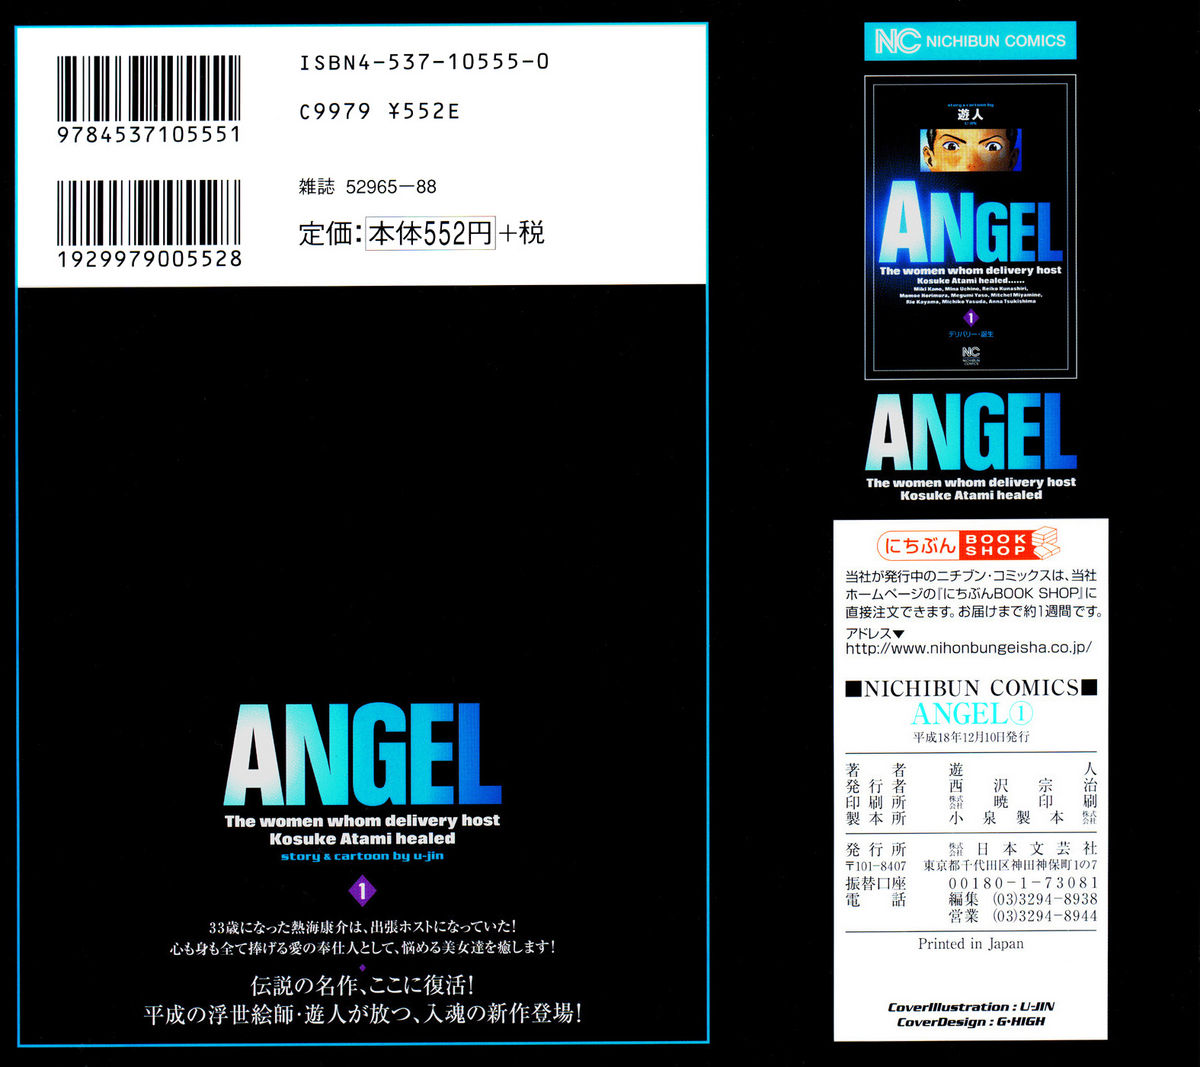 [U-Jin] Angel - The Women Whom Delivery Host Kosuke Atami Healed 01 